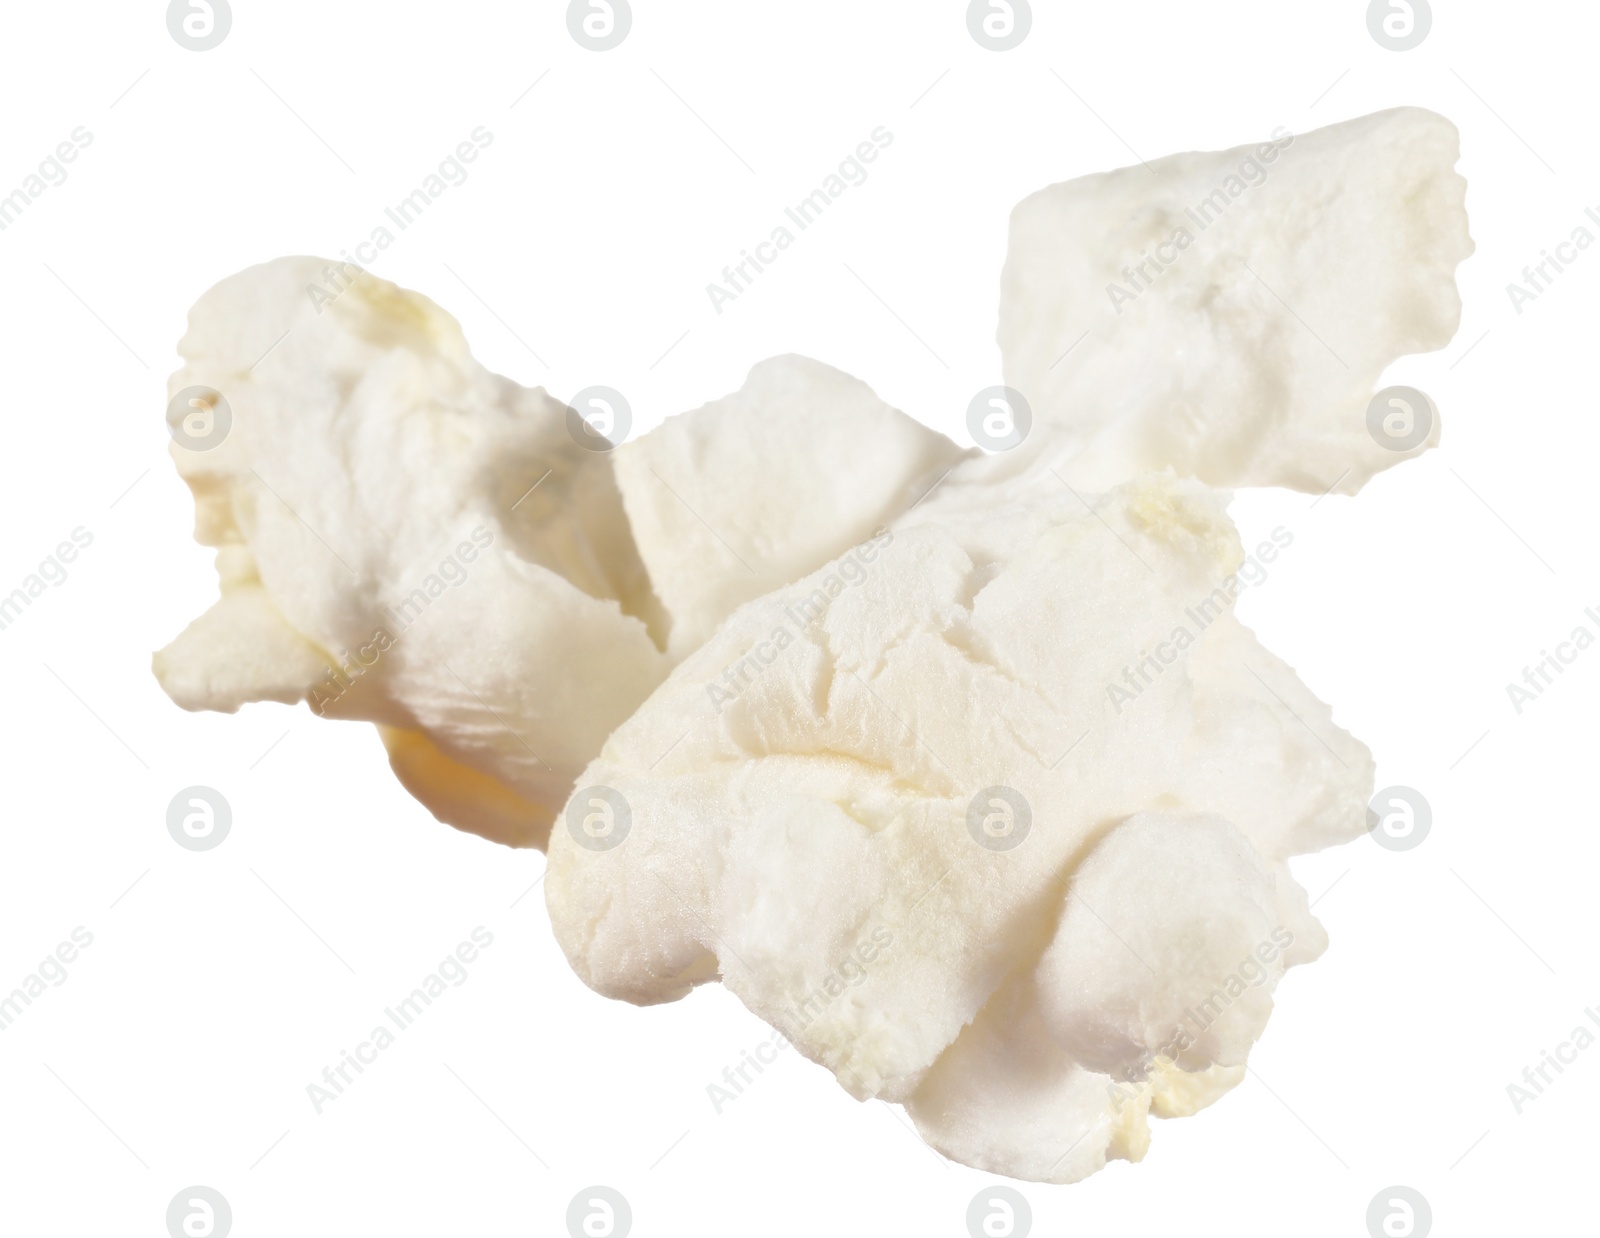 Photo of Kernel of tasty fresh popcorn isolated on white